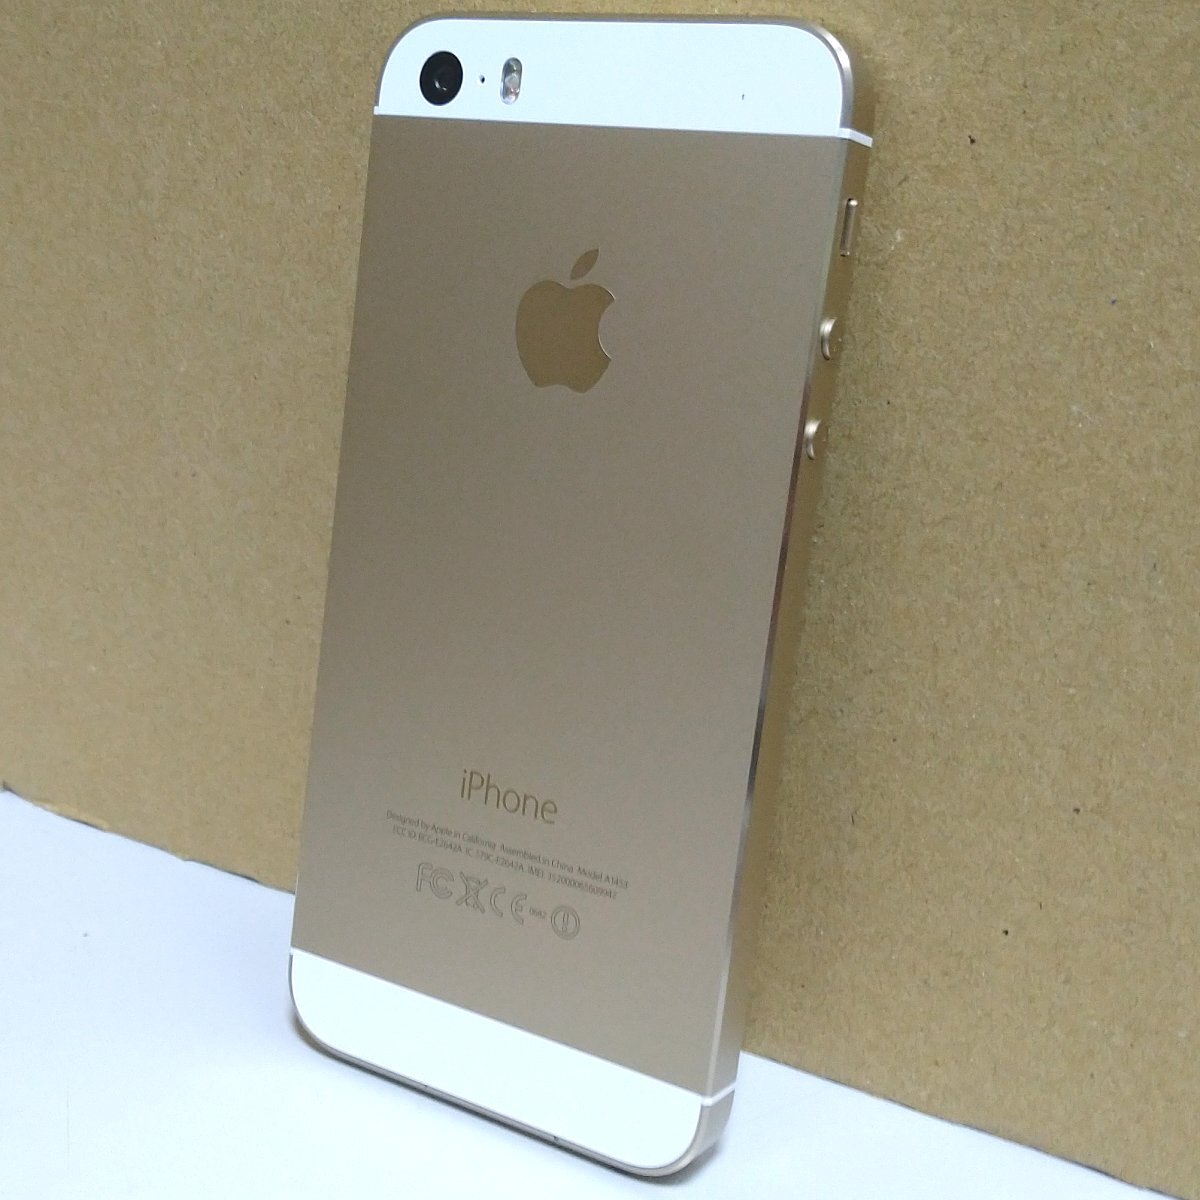 送料無料 au Apple iPhone5s 16GB ME334J/A A1453 ゴールド 白ロム ネットワーク利用制限○ 充電回数84回 必ず内容確認